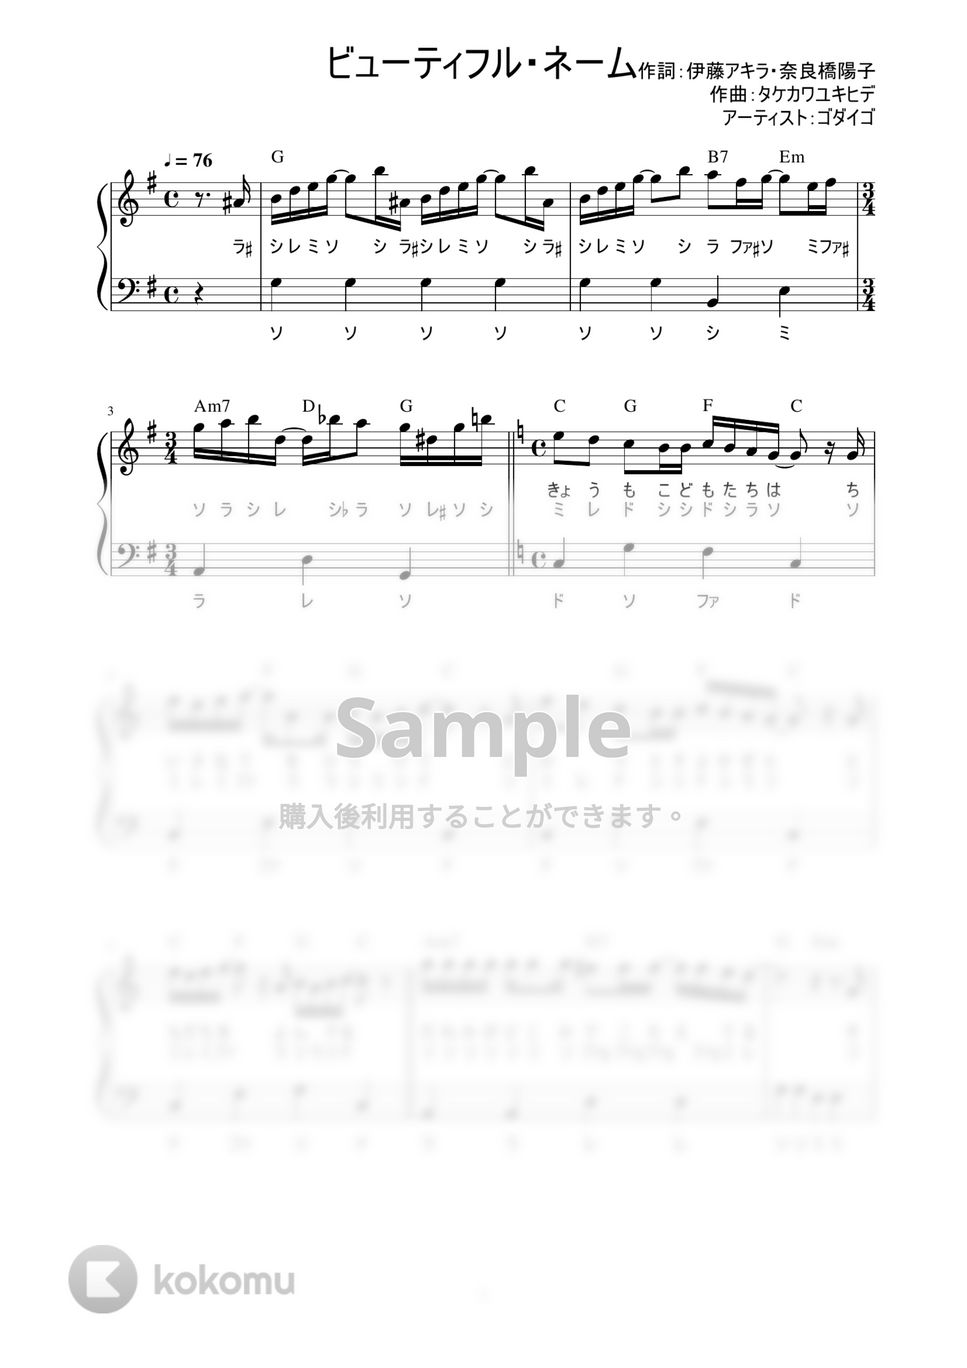 ゴダイゴ - ビューティフル・ネーム (かんたん / 歌詞付き / ドレミ付き / 初心者) by piano.tokyo